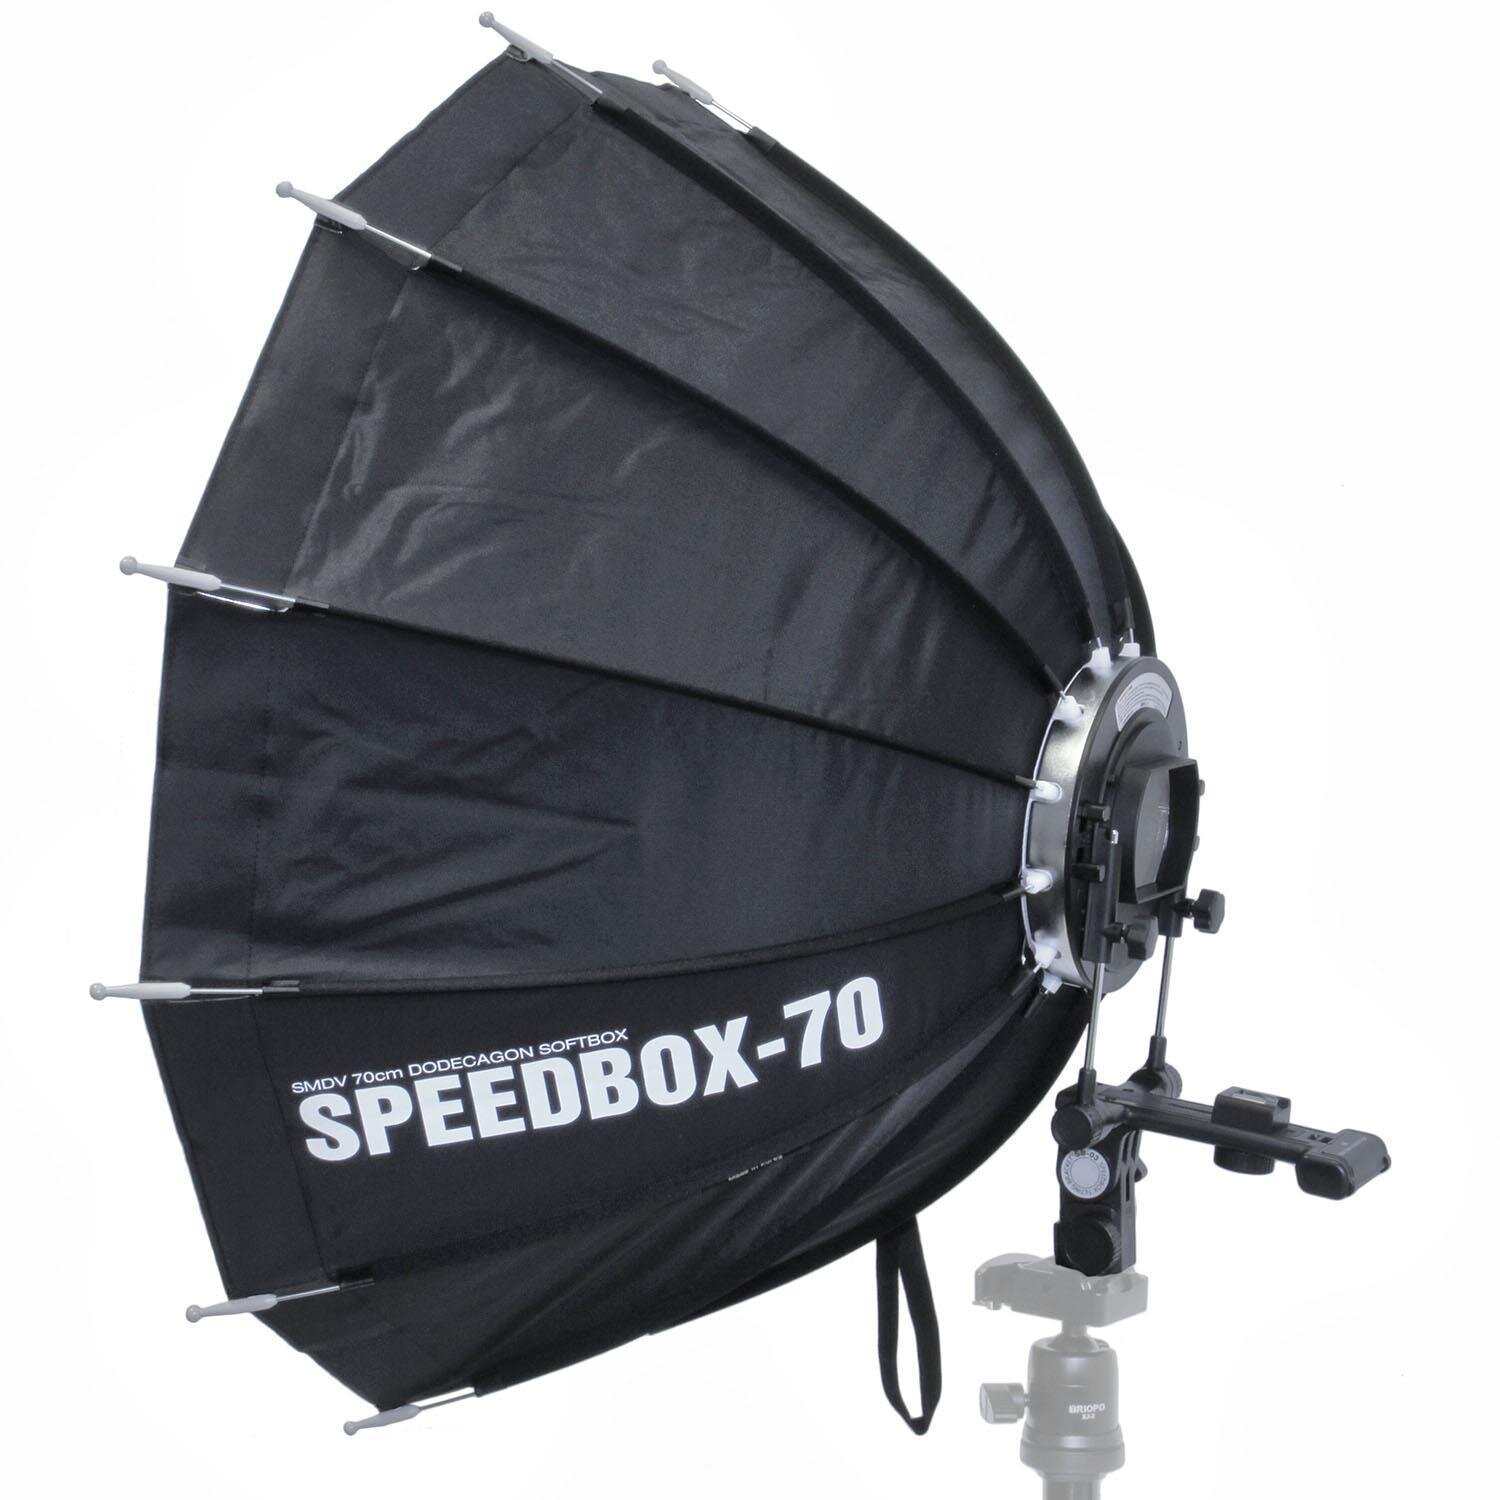 Impulsfoto SMDV Speedbox-70, Mobile Zw&ouml;lfeckige-Softbox 70cm, Weiche Ausleuchtung, F&uuml;r entfesselte Aufsteckblitze mit Standard ISO / Sony Multi Interface Blitzschuh